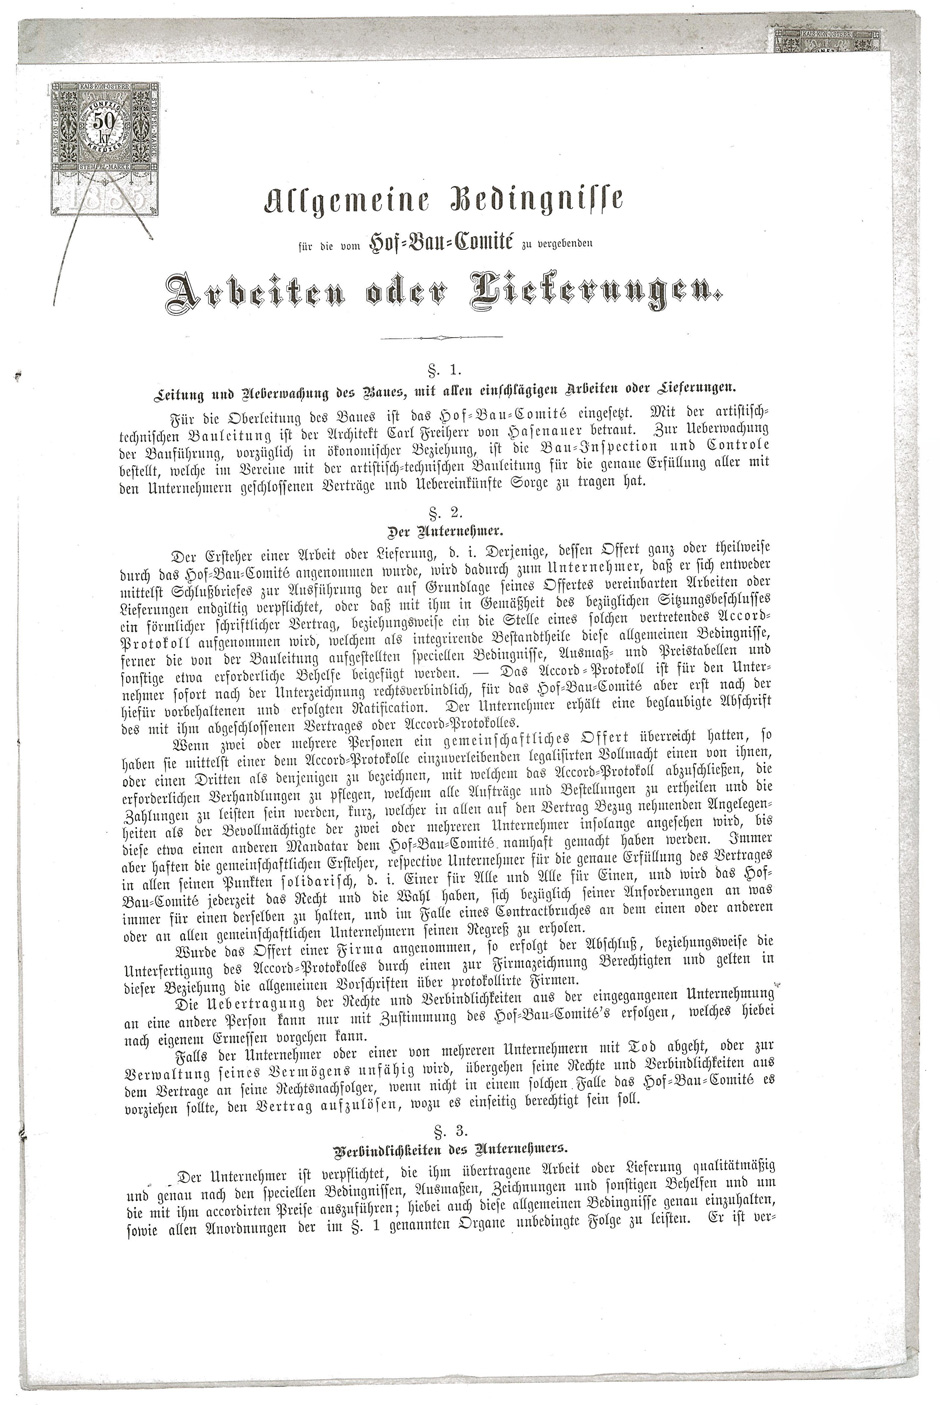 Lieferung von eisernen Türen für das Hofburgtheater, Blatt 10